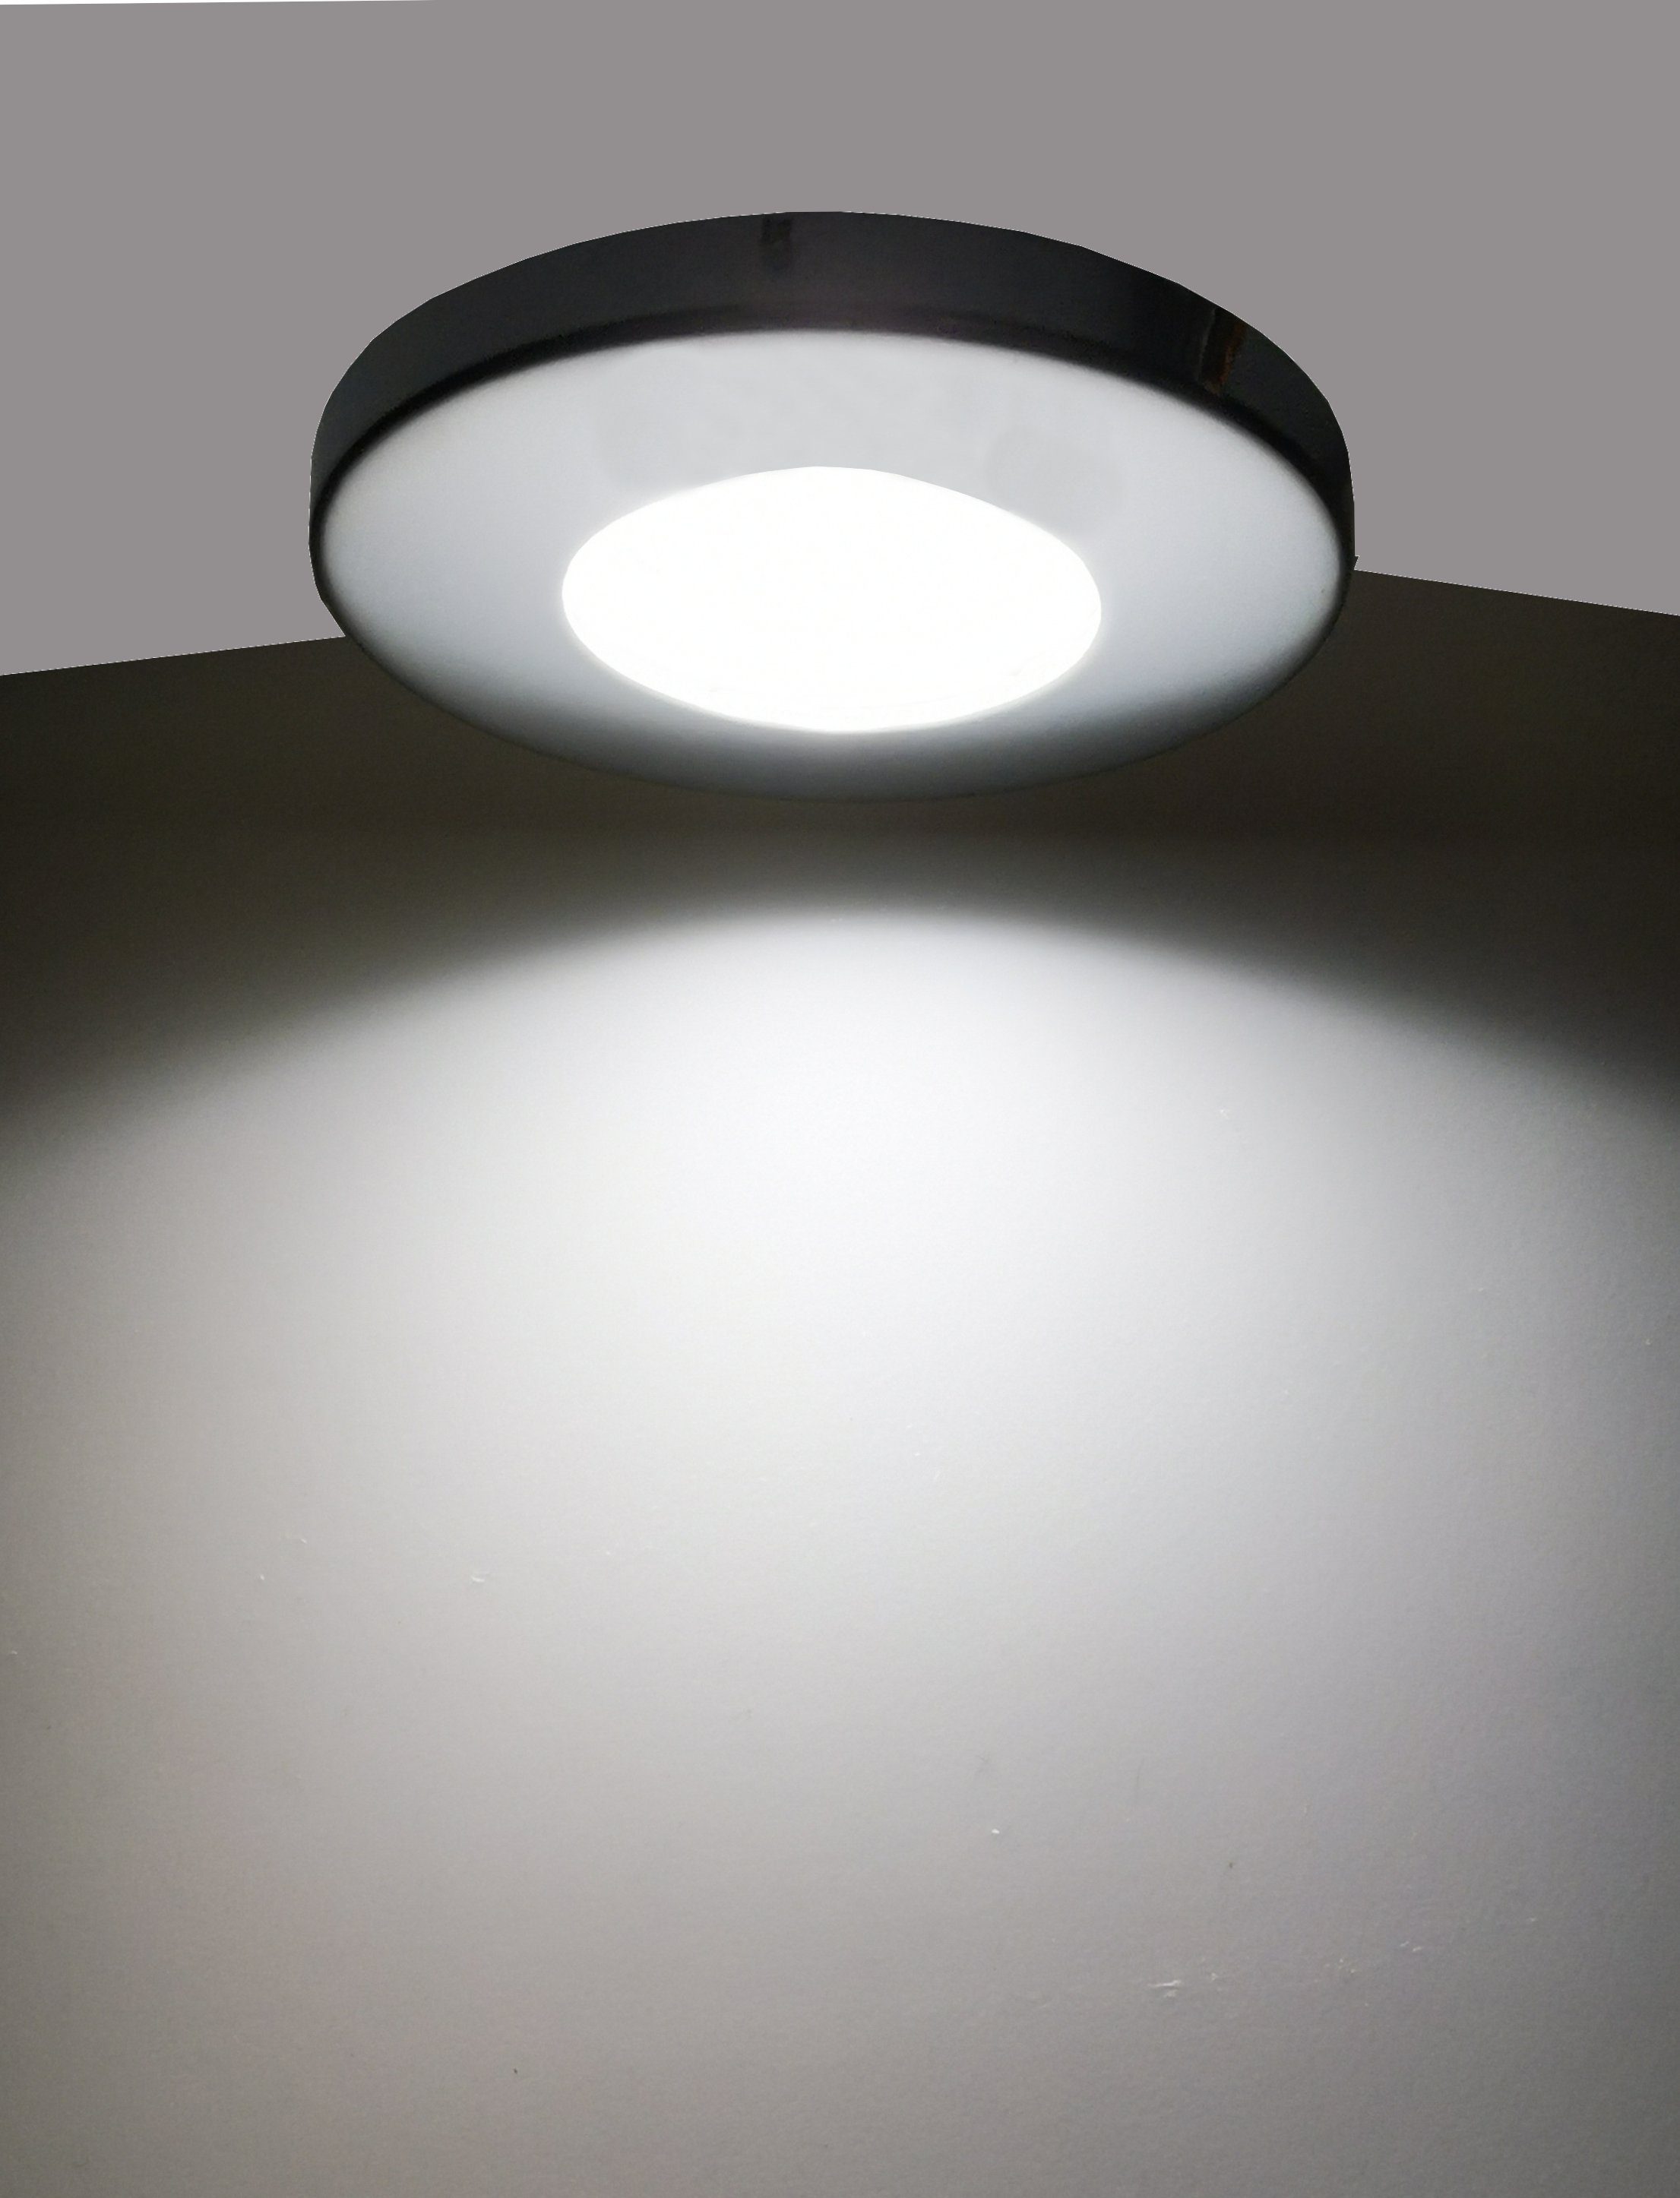 6x LED Einbau Strahler Decken Lampen rund weiß Gäste Zimmer Beleuchtung DIMMBAR 